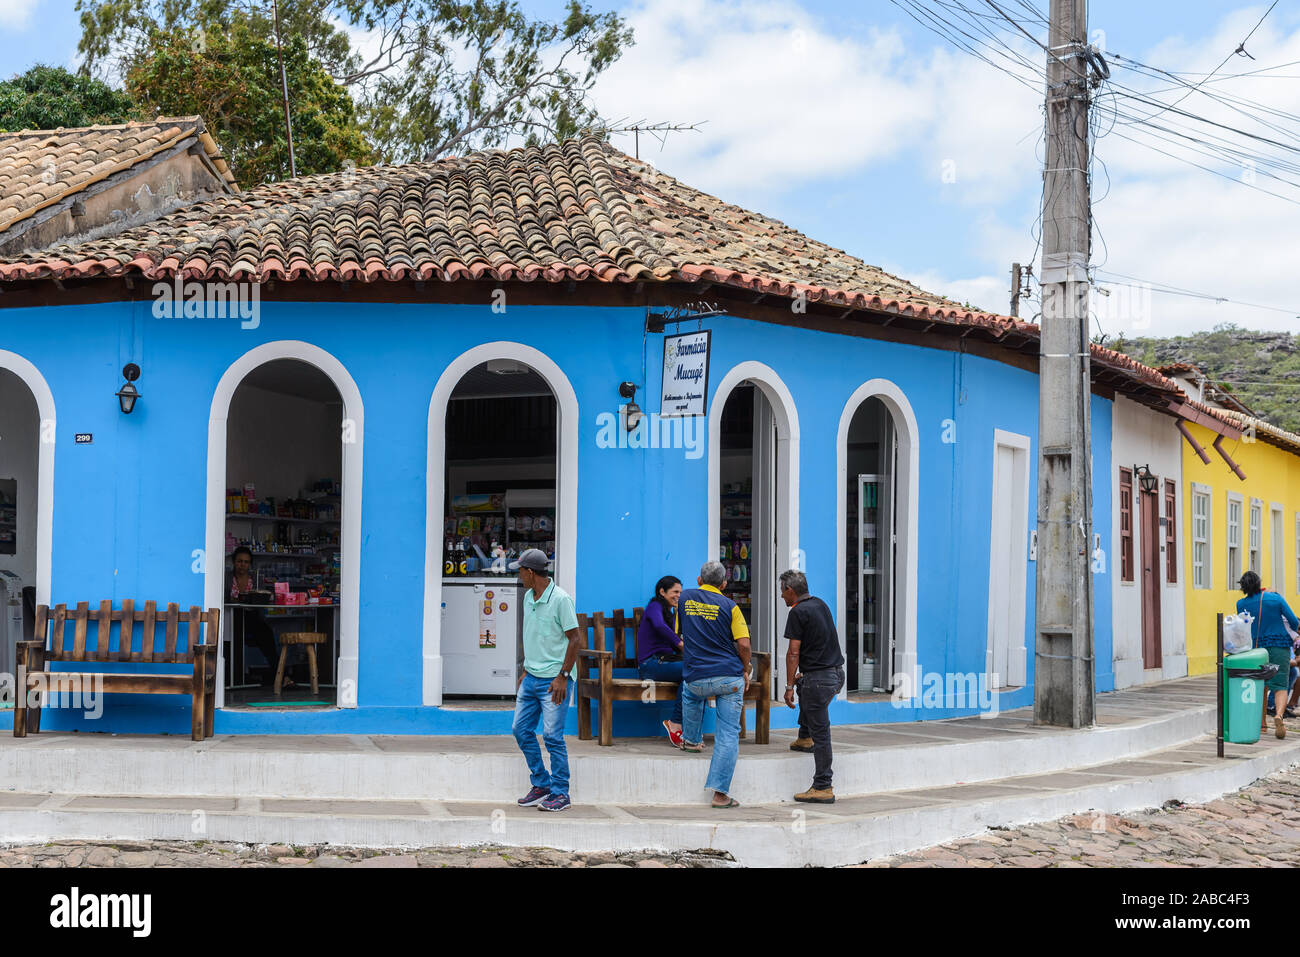 Las personas se reúnen en frente de una tienda en una ciudad pequeña. Lencois, Bahia, Brasil. Foto de stock